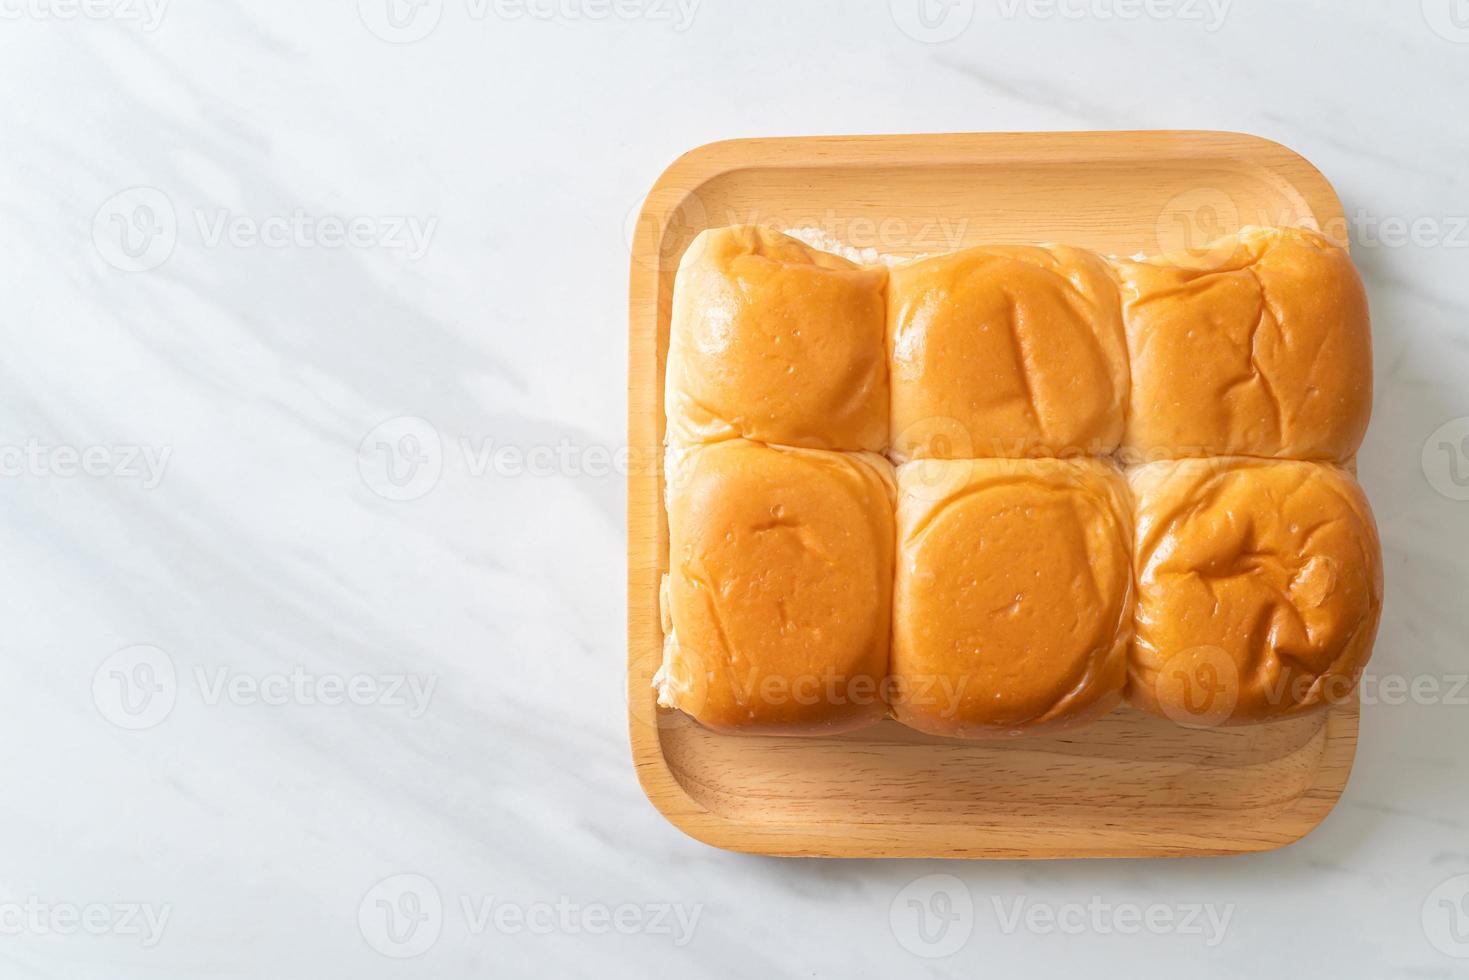 bröd med thailändsk pandan vaniljsås foto